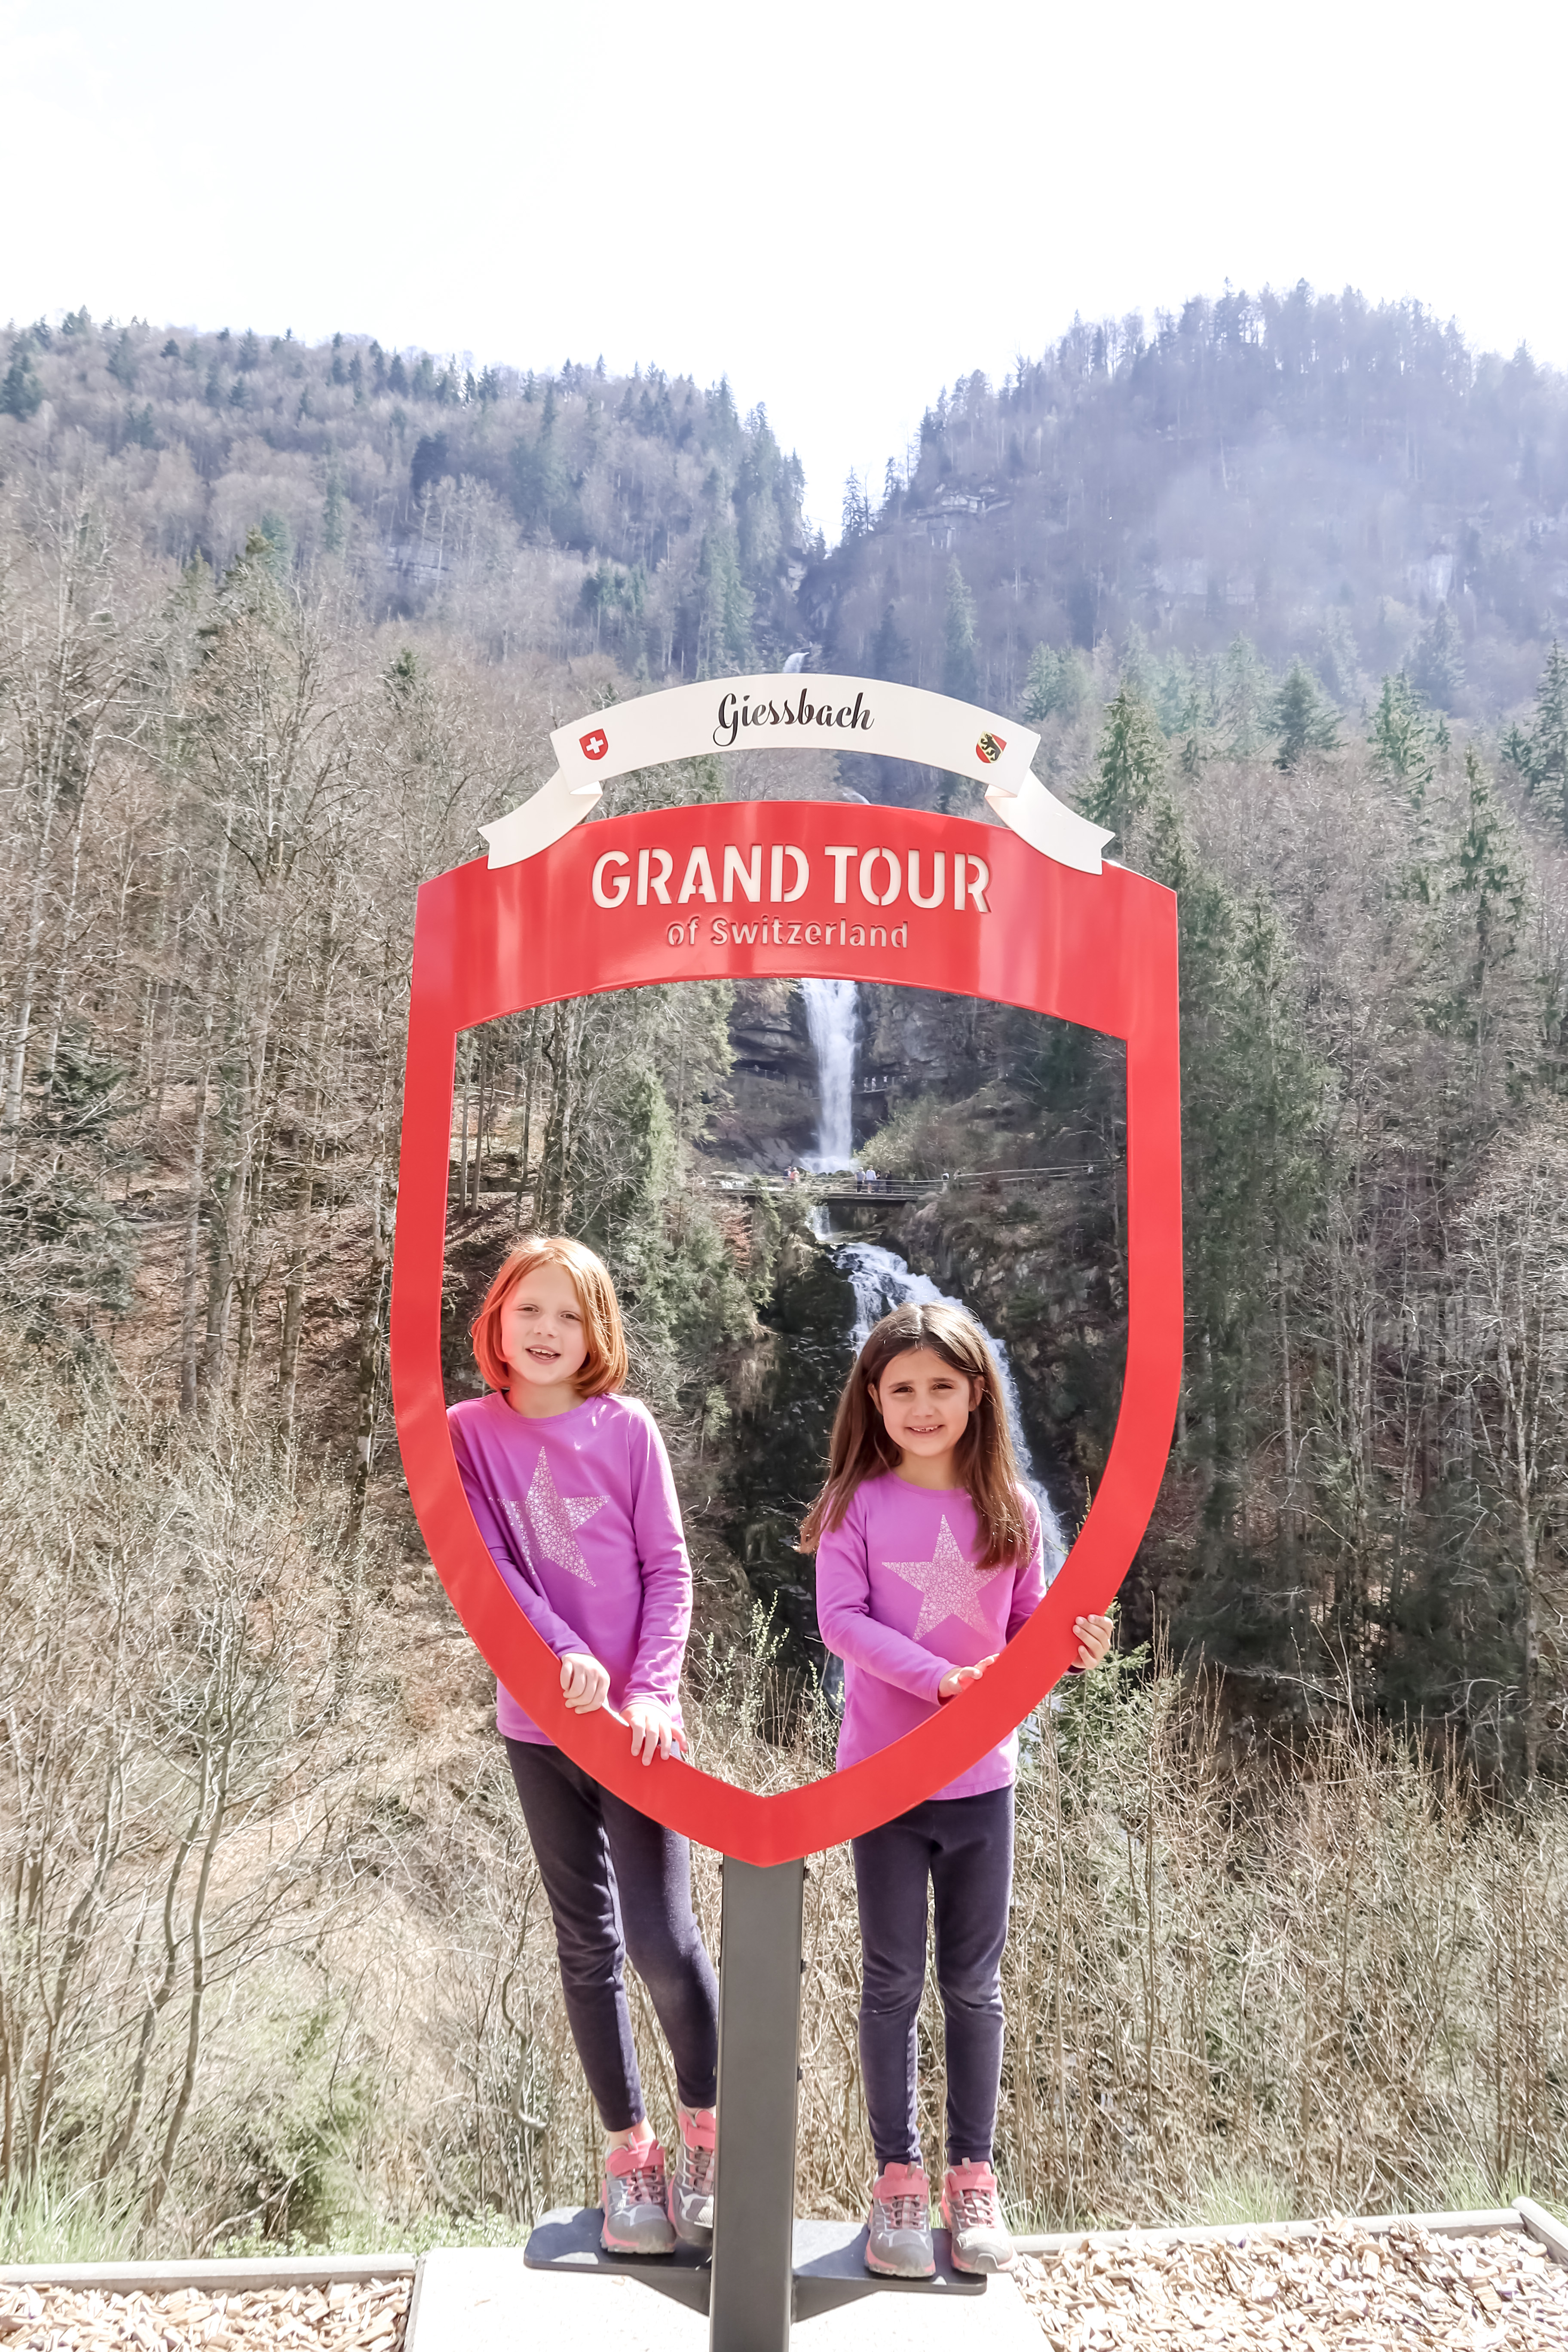 Getaway at Giessbach - Grand Tour photo spot